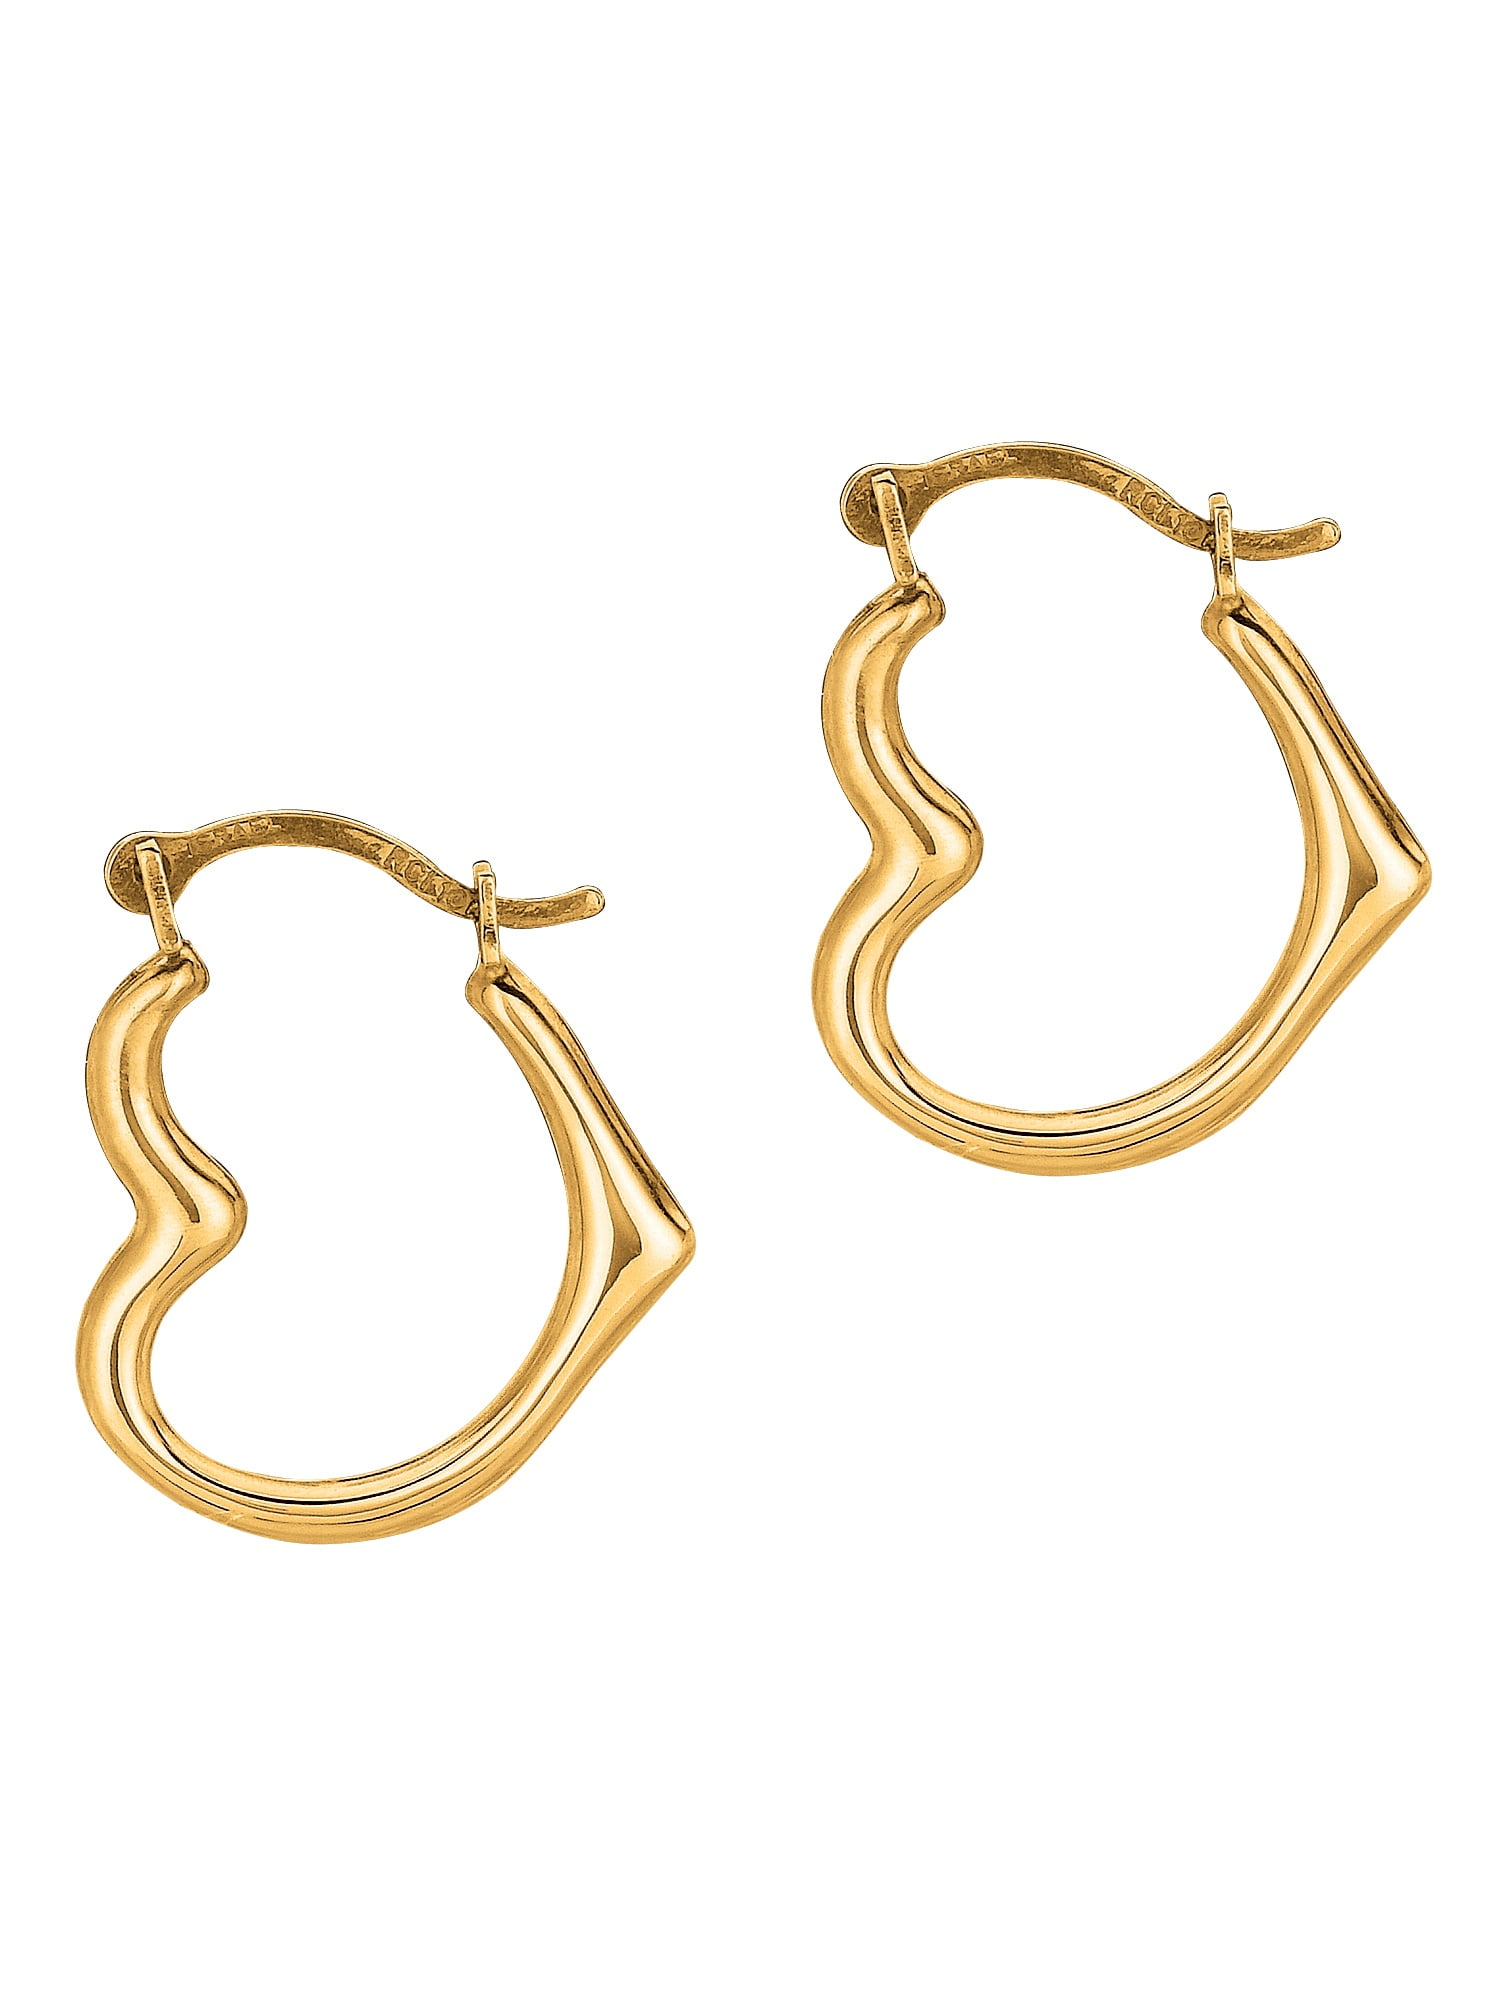 Open Heart Hoop Earrings in 10K White Gold